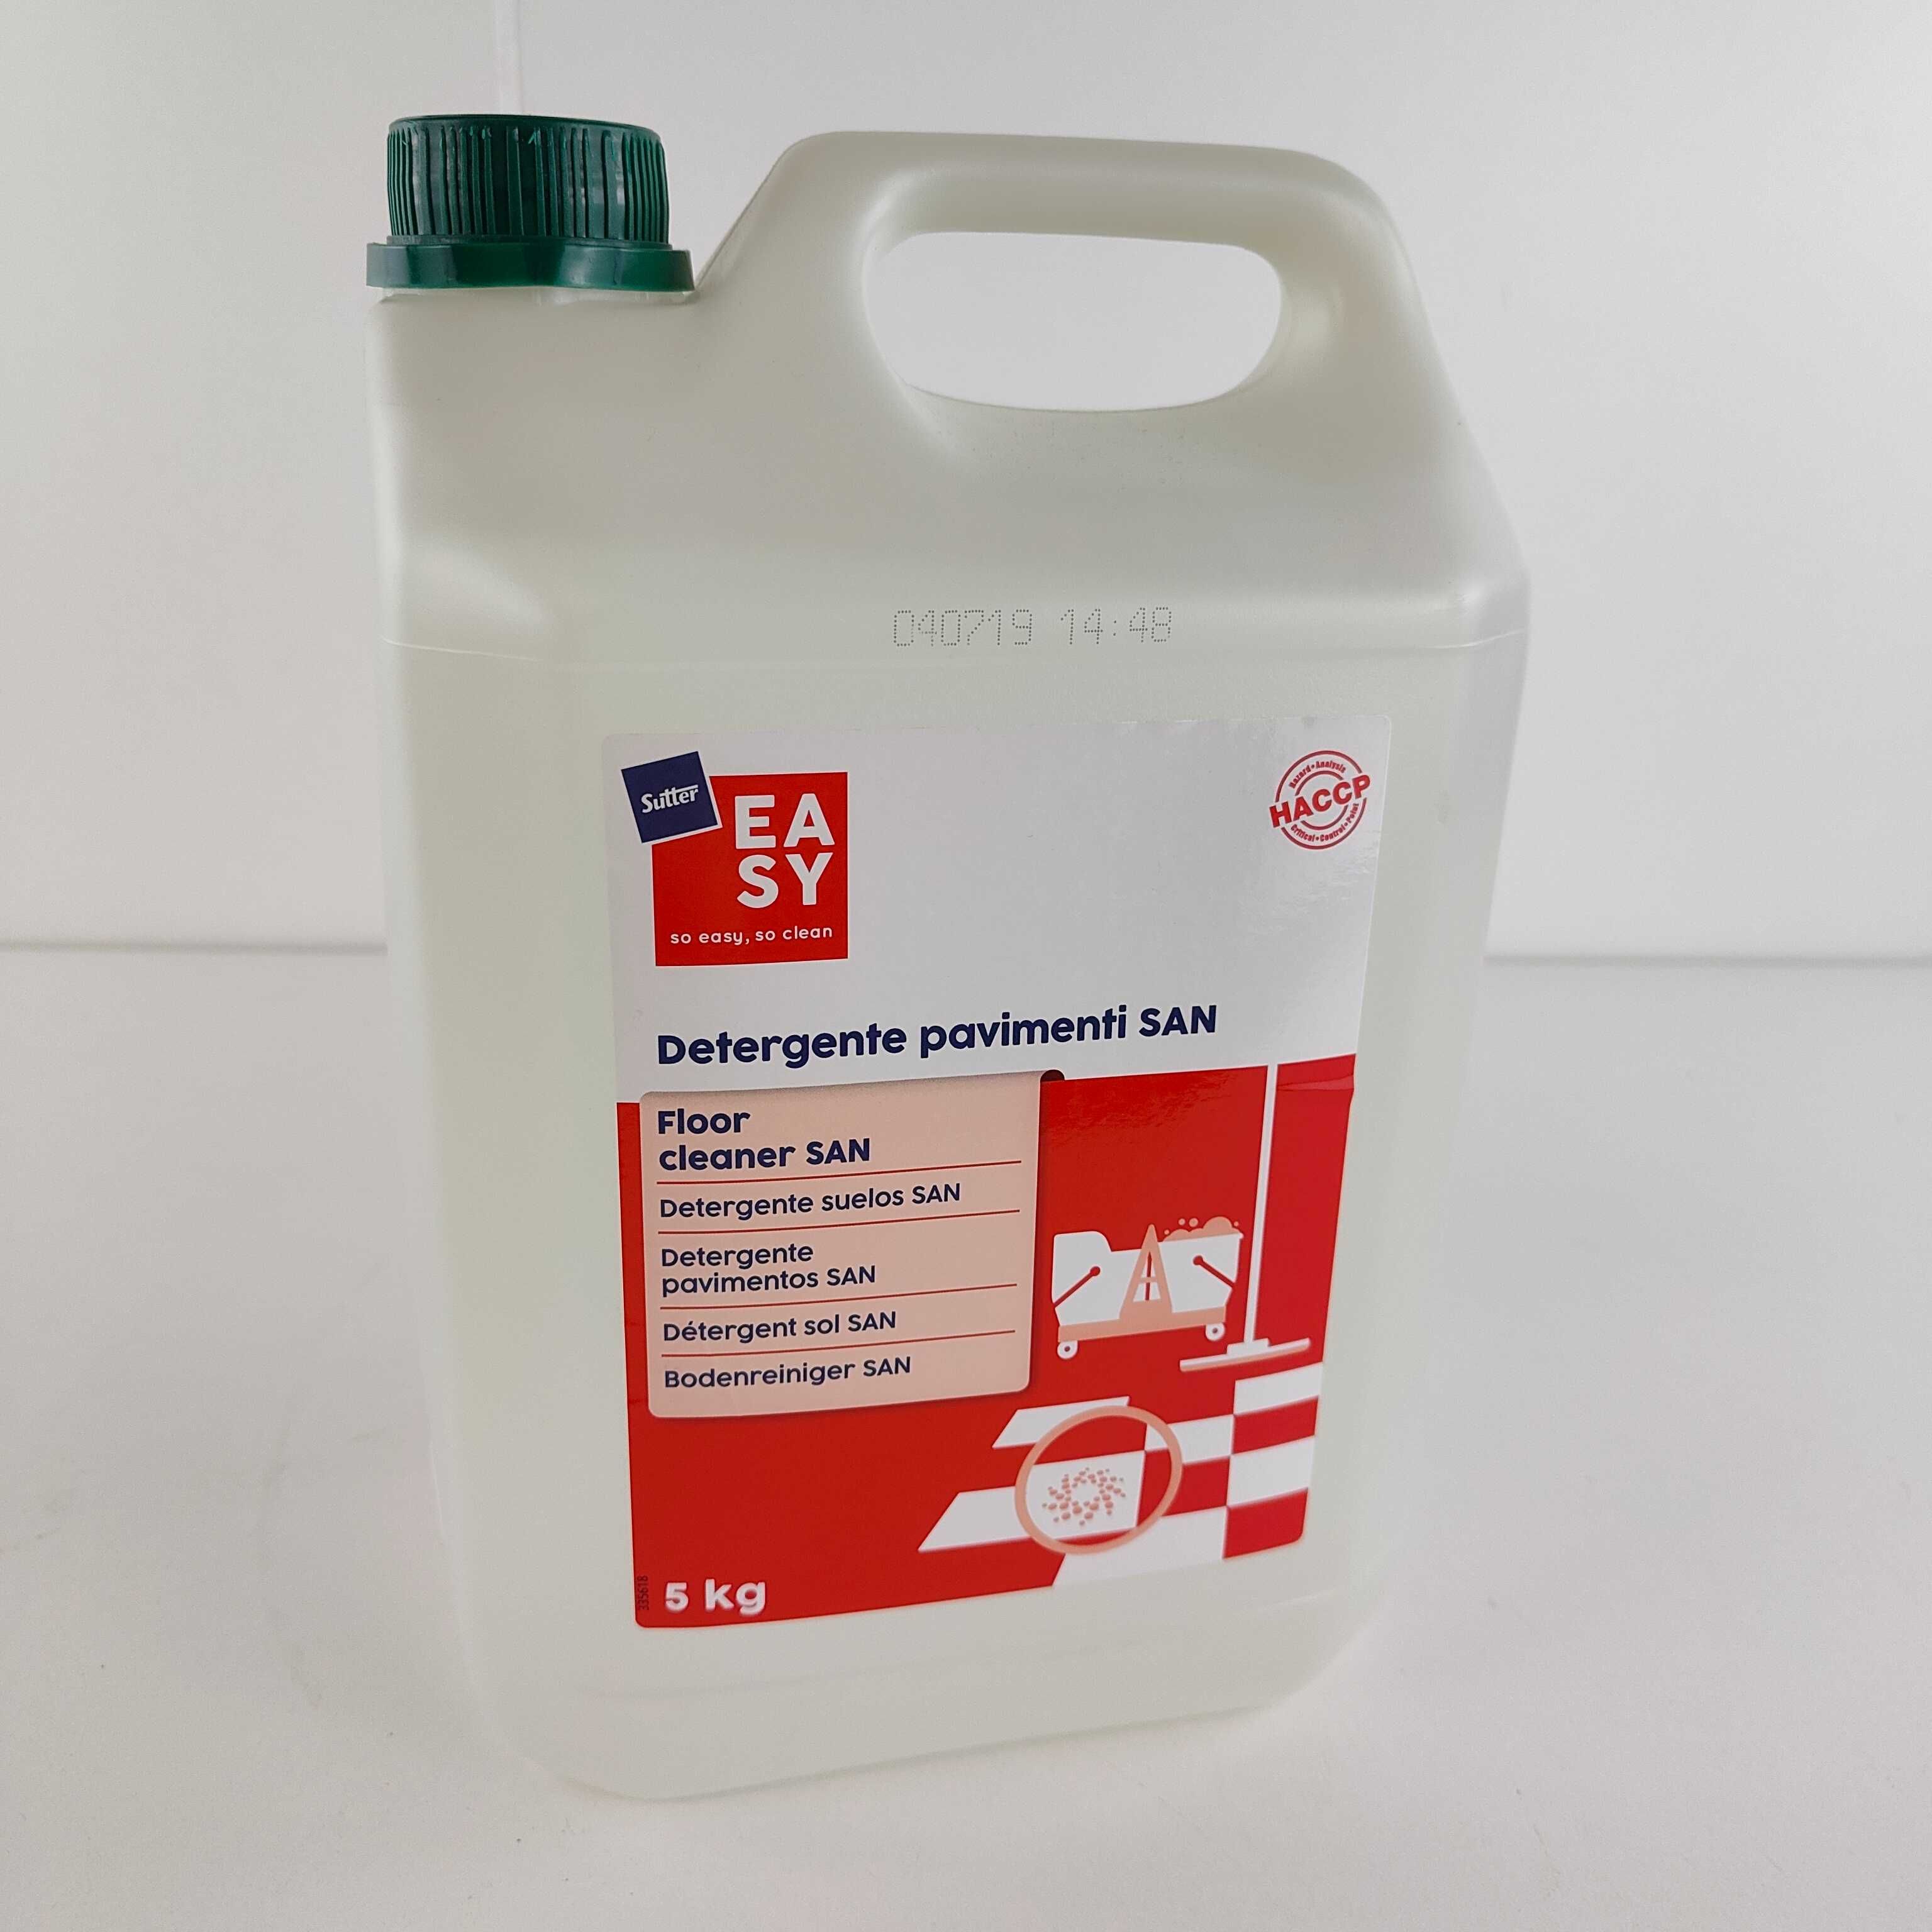 Detergente para Chão Desinfetante Profissional 5 Kg | Sutter Easy